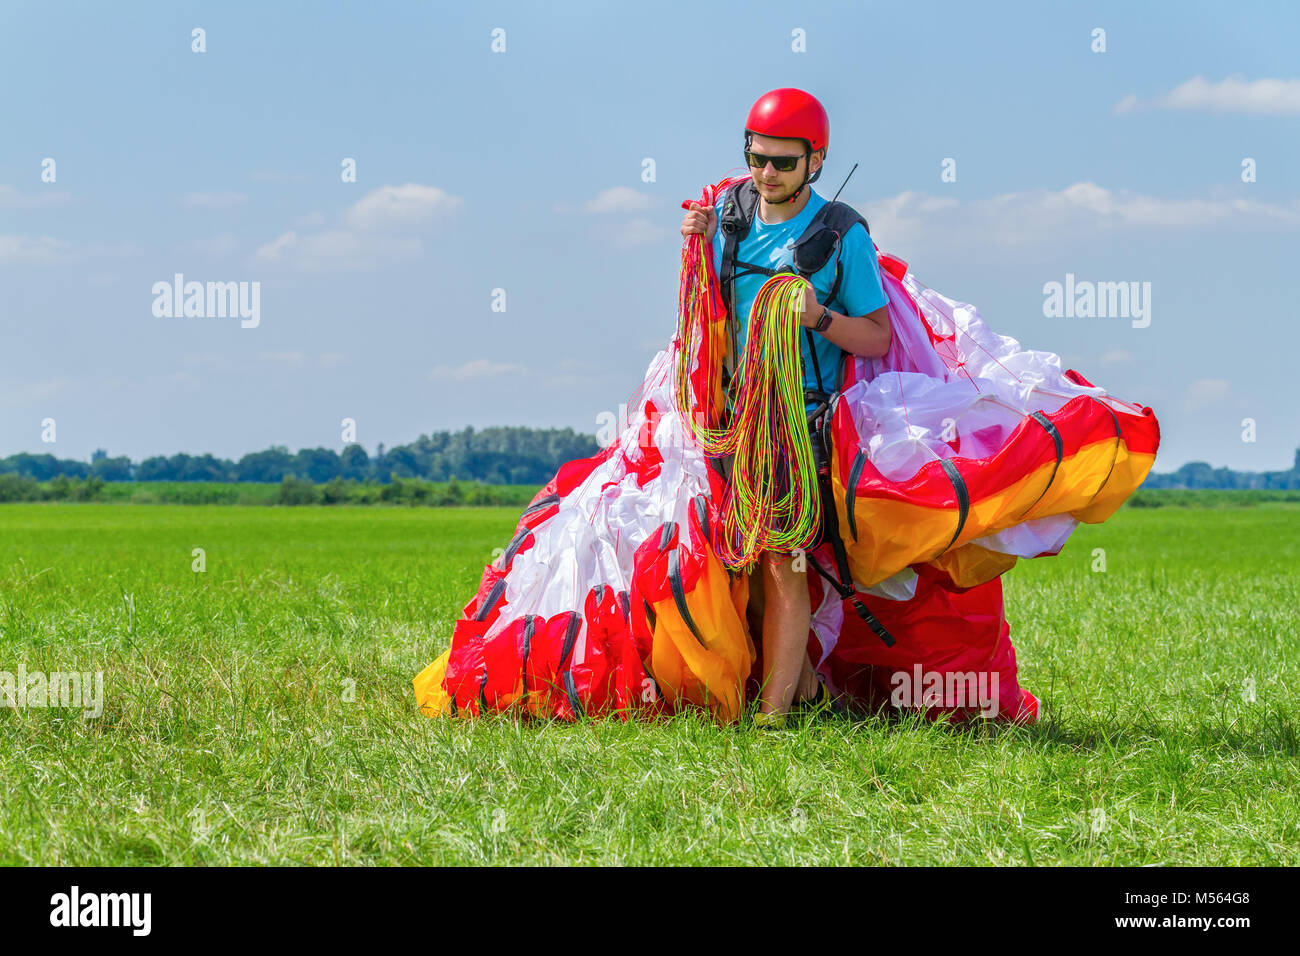 Matelas comptable parapente flyer en prairie Banque D'Images